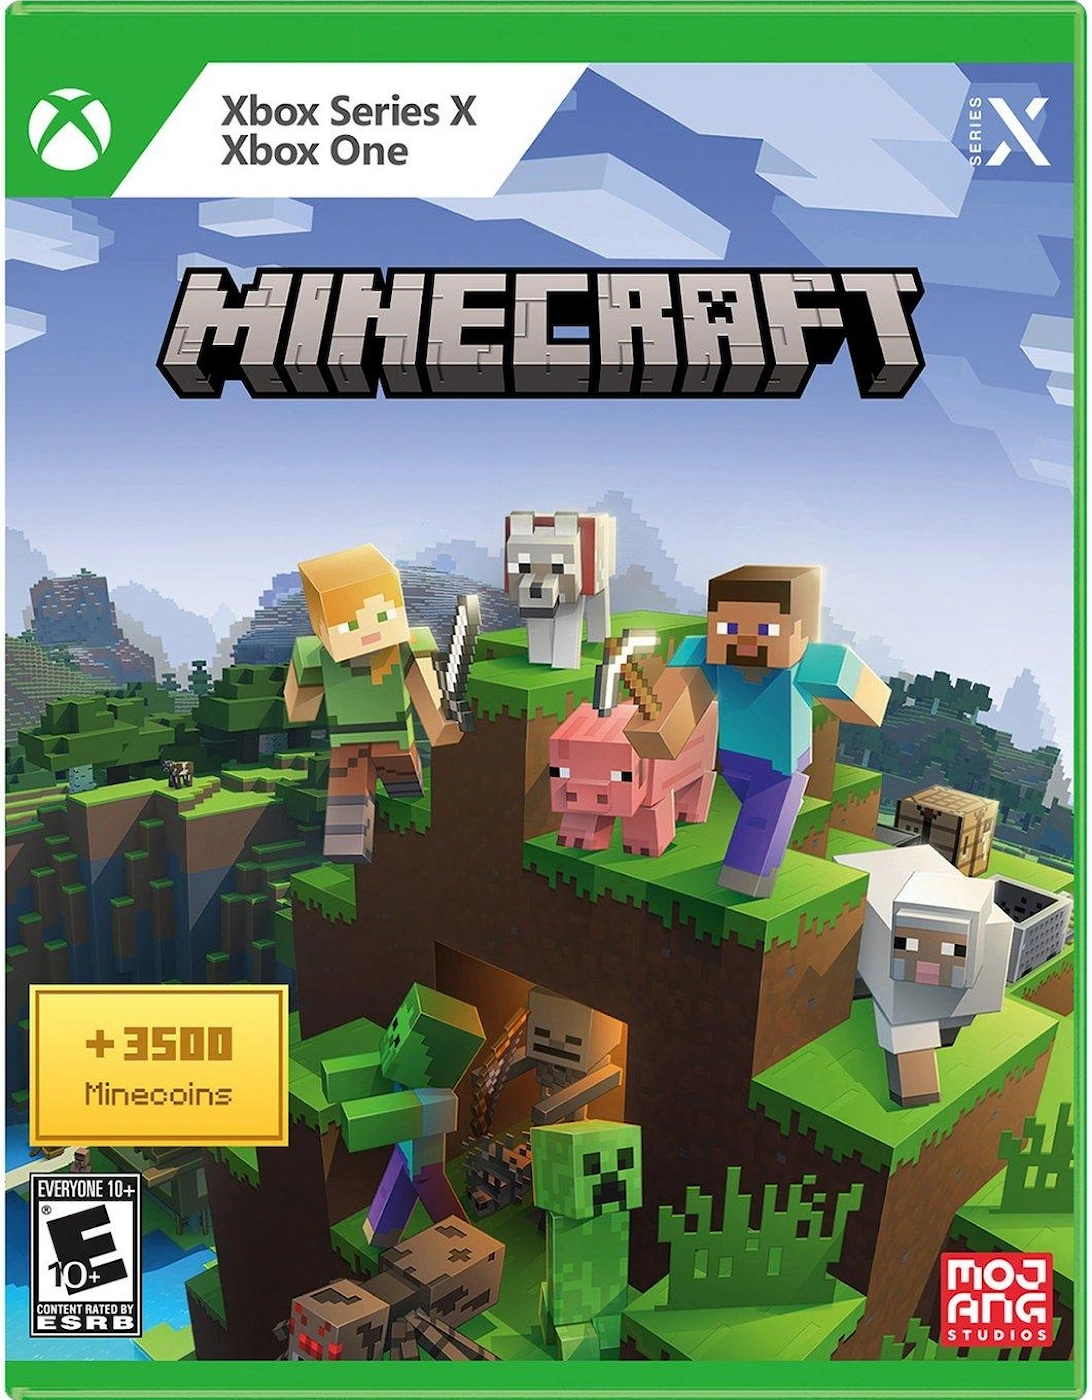 Xbox Minecraft with 3500 Minecoins – Xbox Series X, Xbox One, 2 of 1